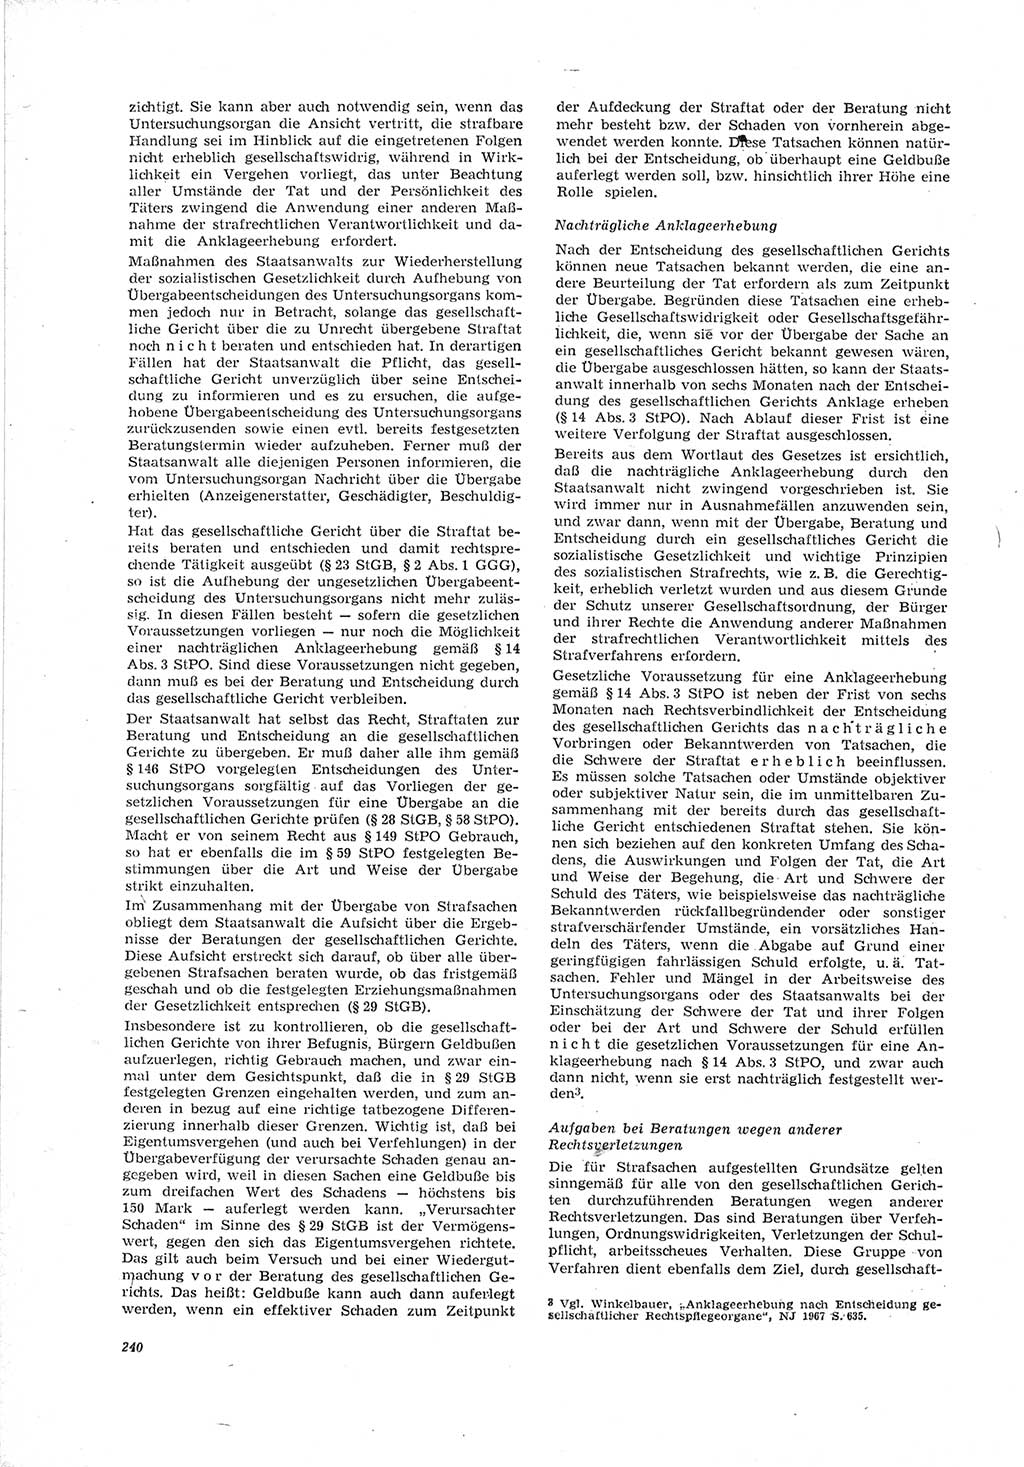 Neue Justiz (NJ), Zeitschrift für Recht und Rechtswissenschaft [Deutsche Demokratische Republik (DDR)], 23. Jahrgang 1969, Seite 240 (NJ DDR 1969, S. 240)